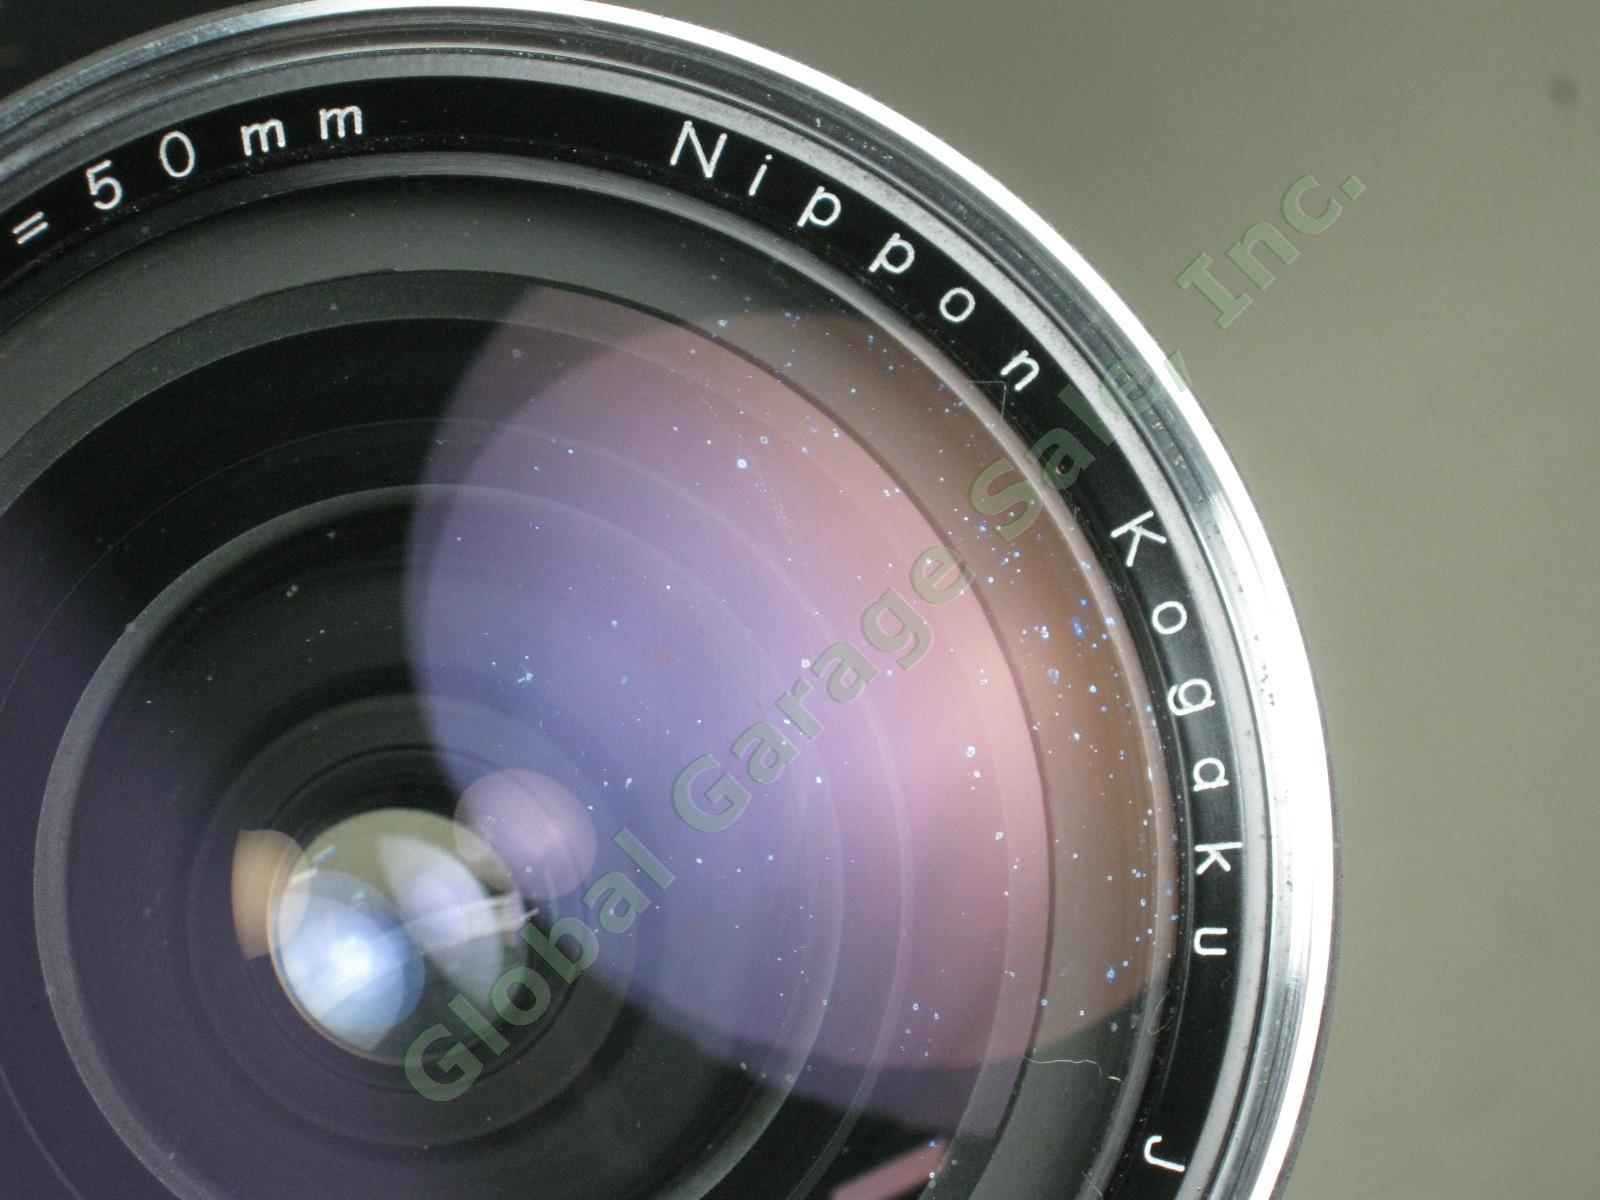 Zenza Bronica EC-TL Camera Nippon Kogaku Nikkor-H 50mm 1:3.5 f/3.5 Lens Bundle 11